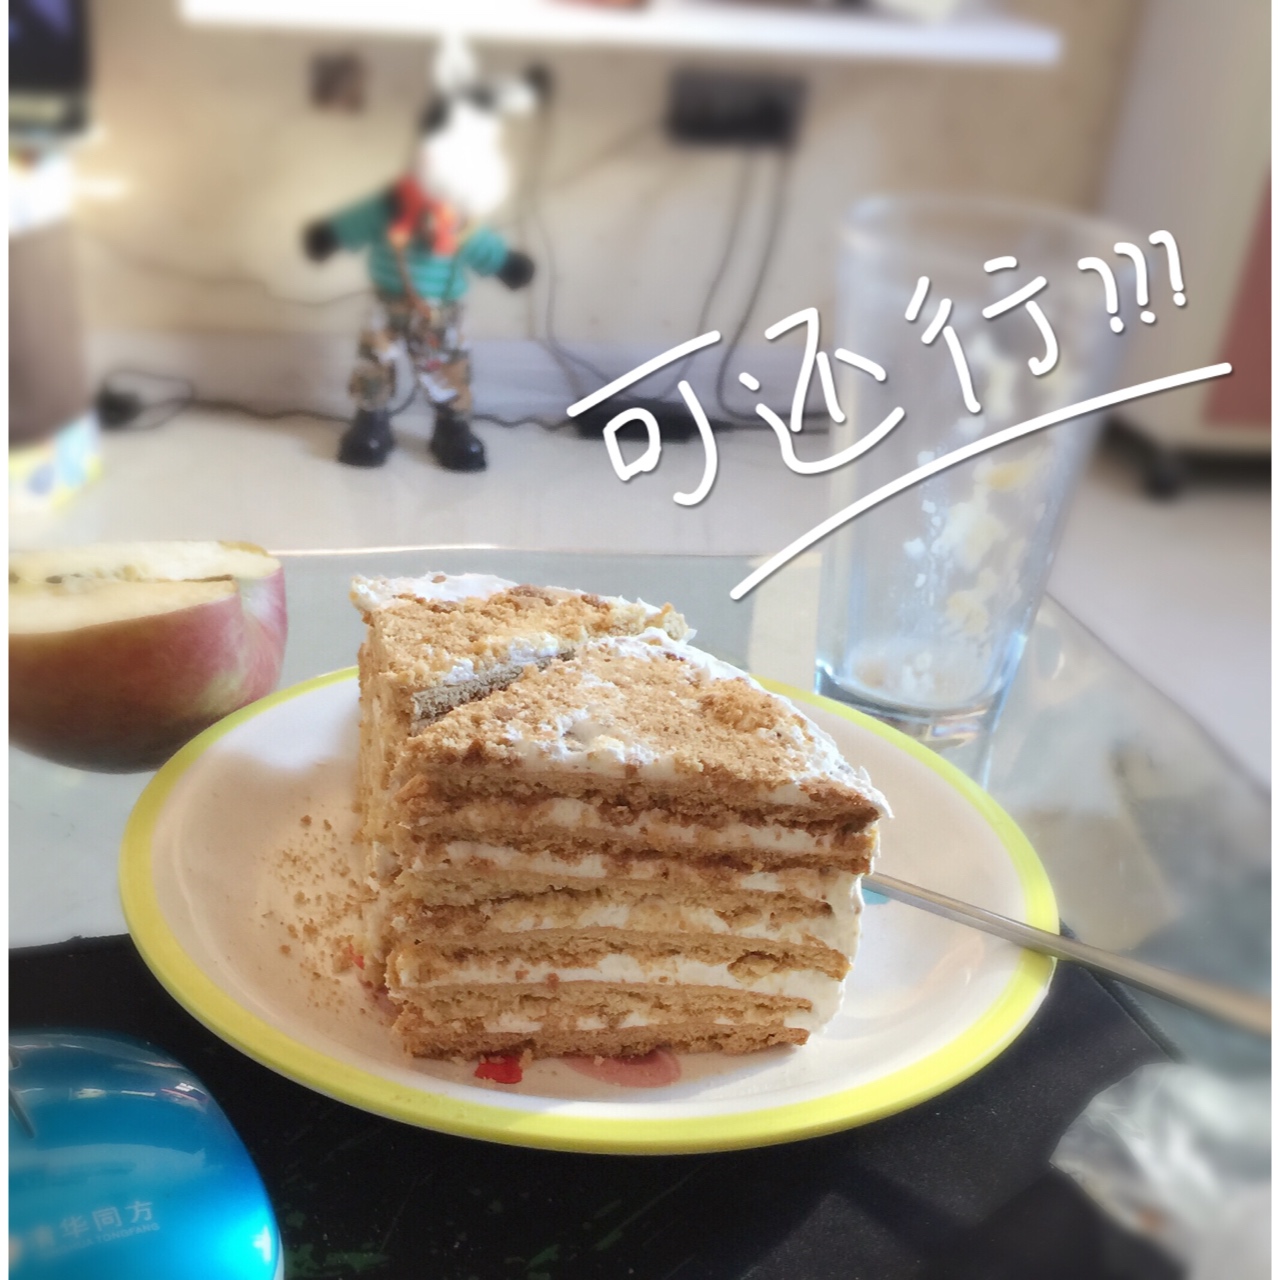 俄罗斯蜂蜜蛋糕   千层蛋糕【又名提拉米苏】